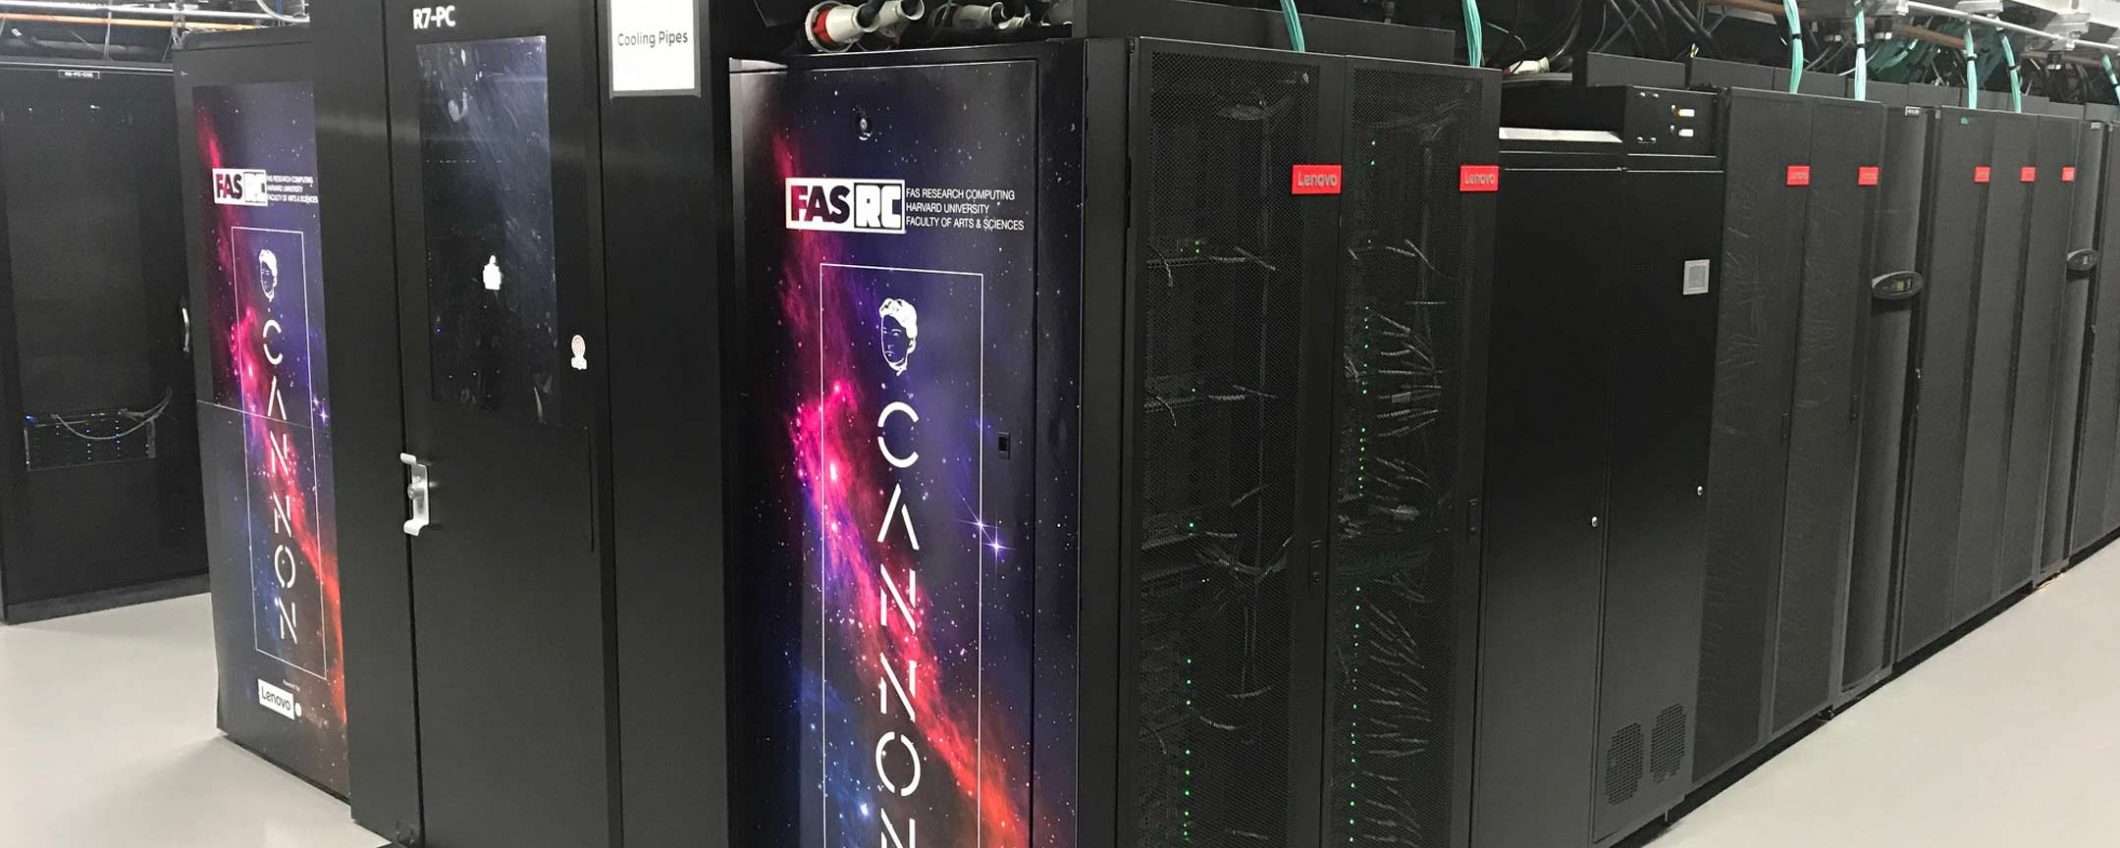 Il supercomputer Cannon è raffreddato a liquido